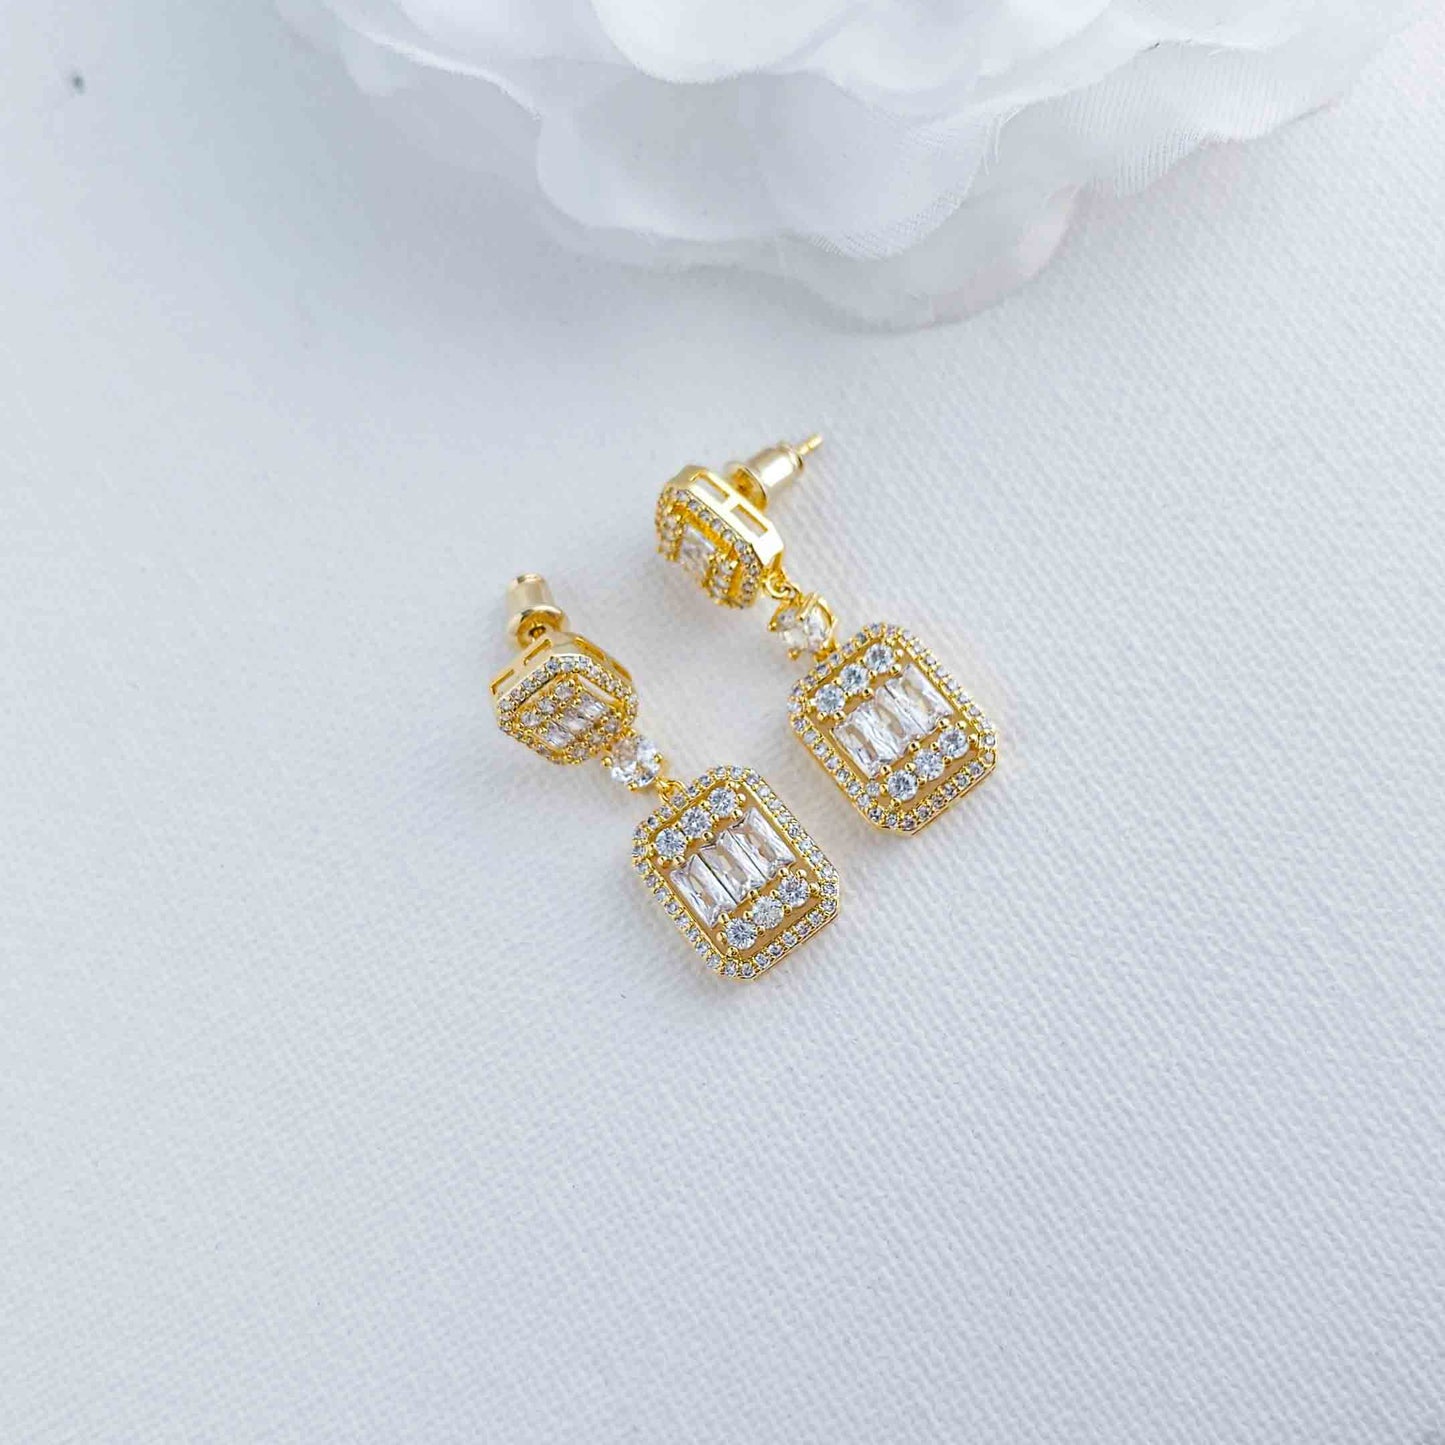 Ensemble de bijoux en or avec collier goutte et boucles d'oreilles pour mariage-Edith